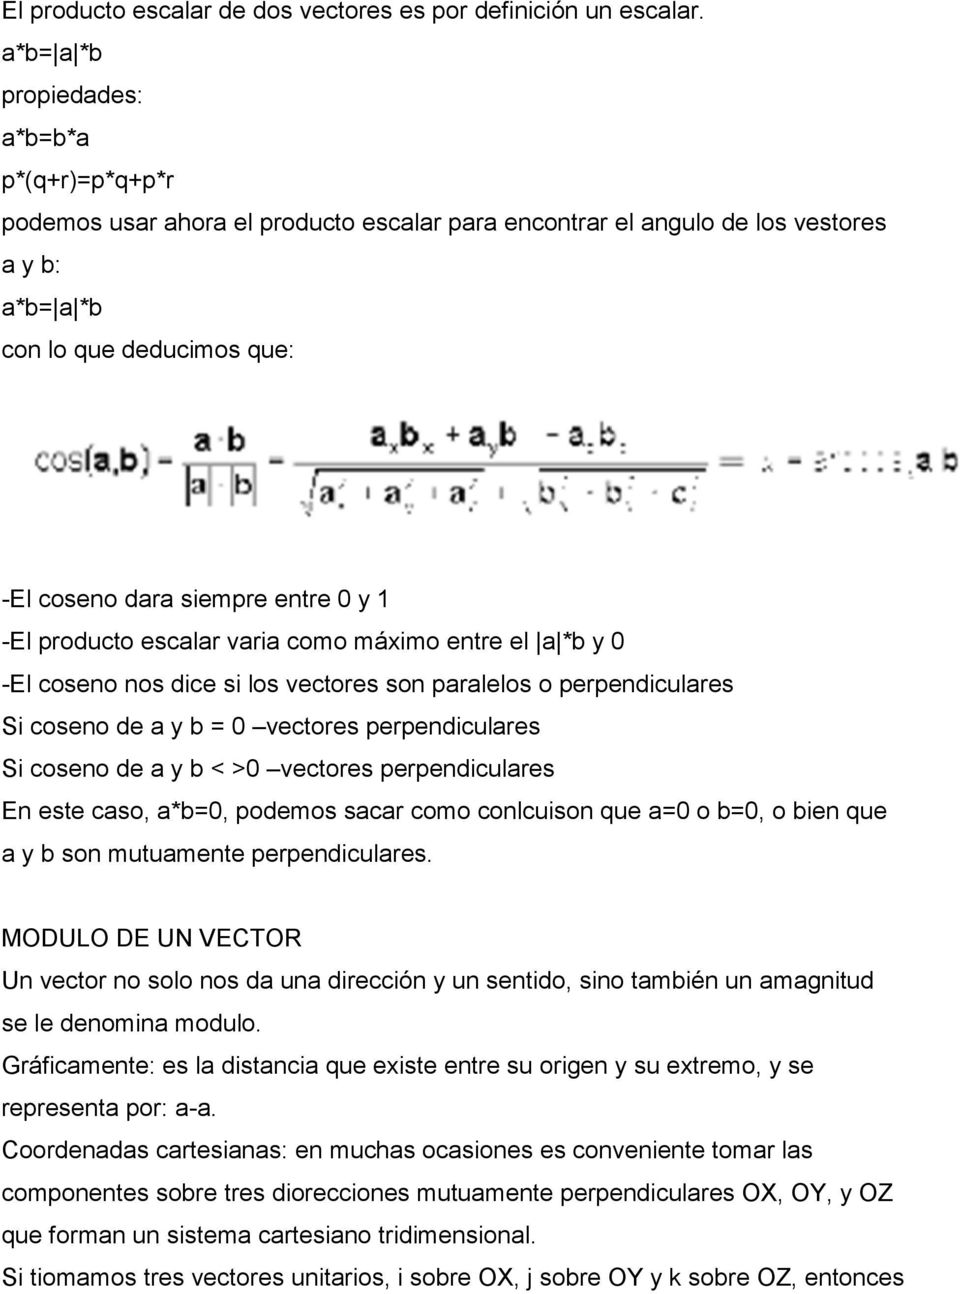 0 y 1 -El producto escalar varia como máximo entre el a *b y 0 -El coseno nos dice si los vectores son paralelos o perpendiculares Si coseno de a y b = 0 vectores perpendiculares Si coseno de a y b <